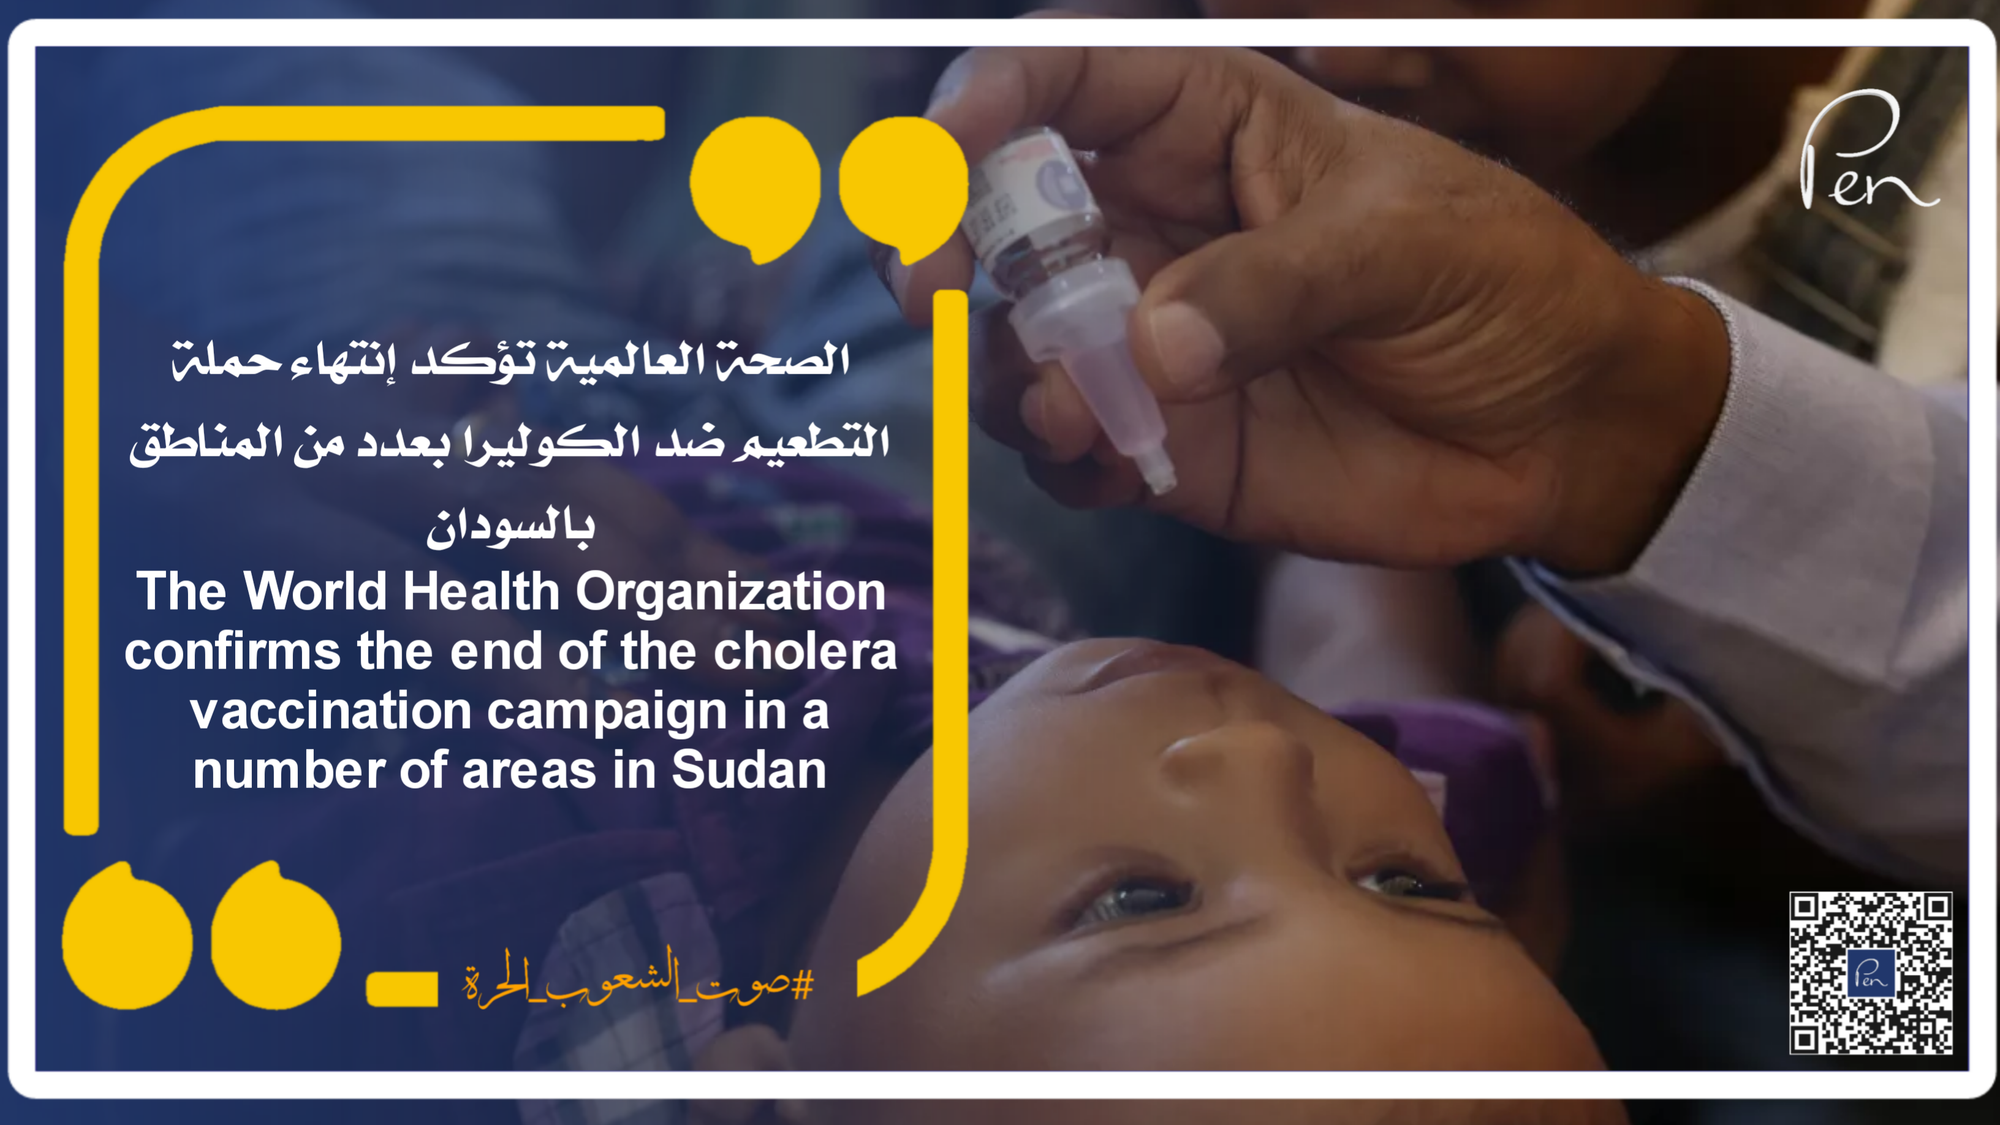 الصحة العالمية تؤكد إنتهاء حملة التطعيم ضد الكوليرا بعدد من المناطق بالسودان